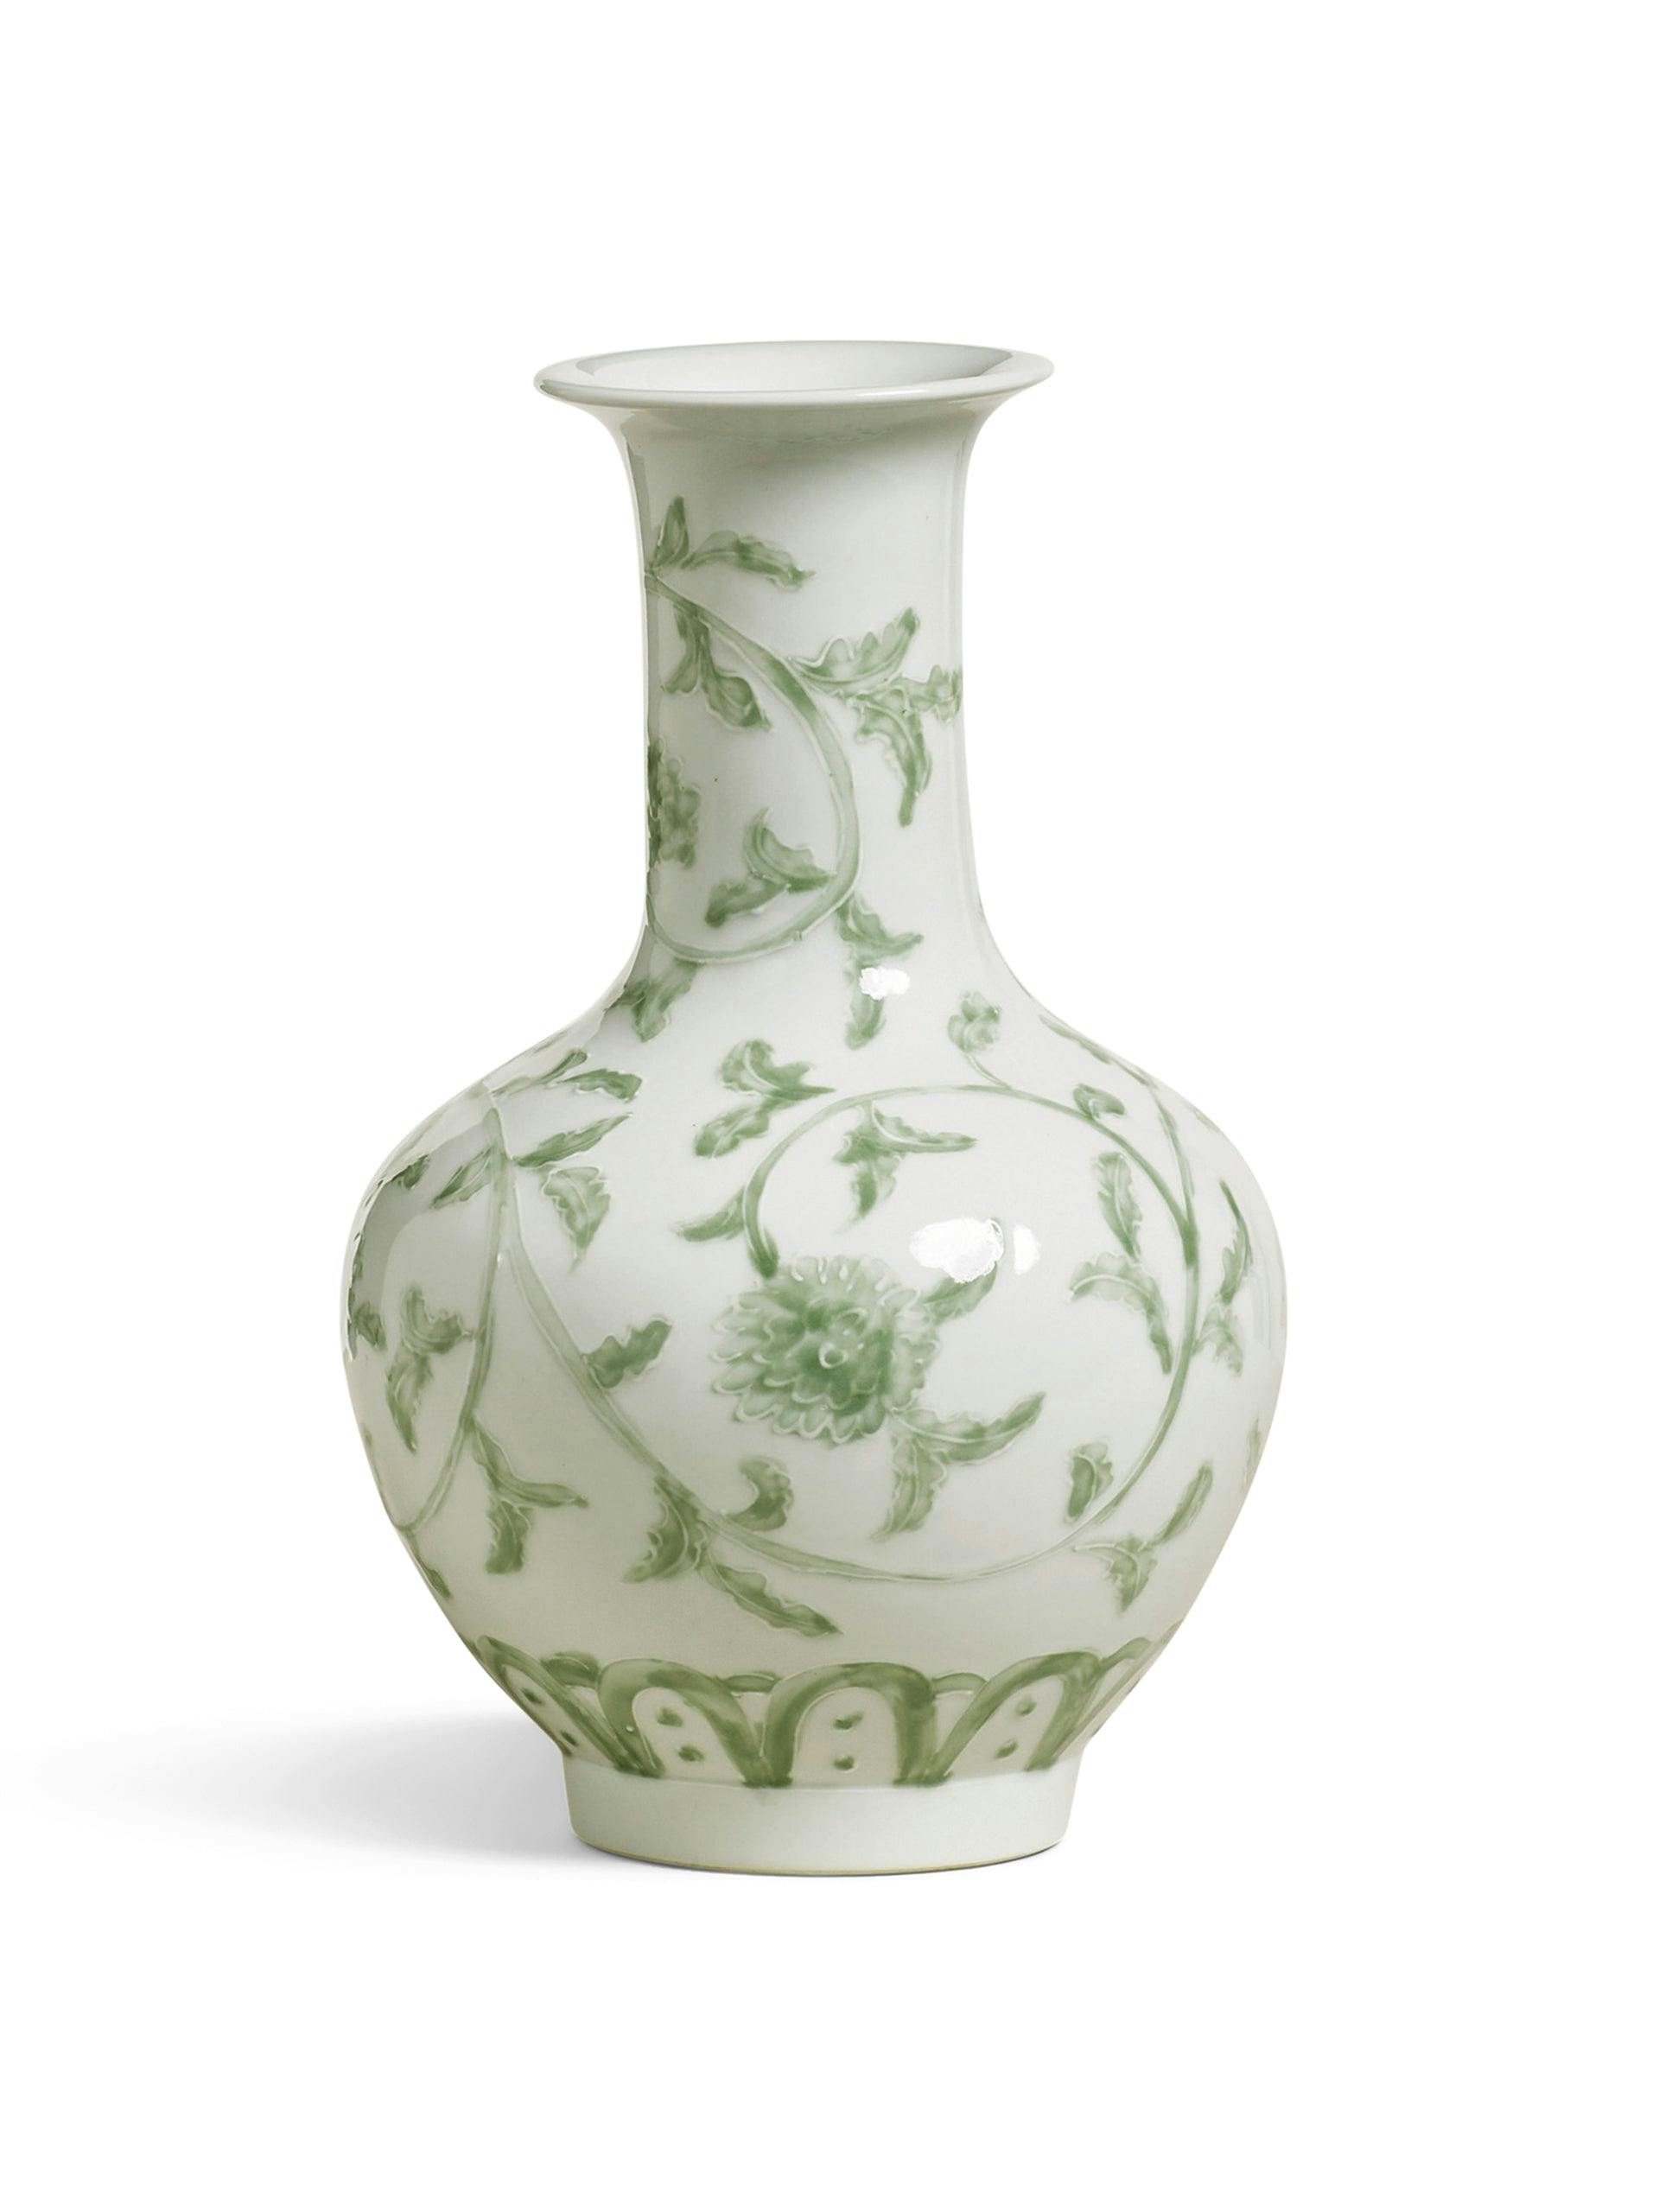 Bonington vase